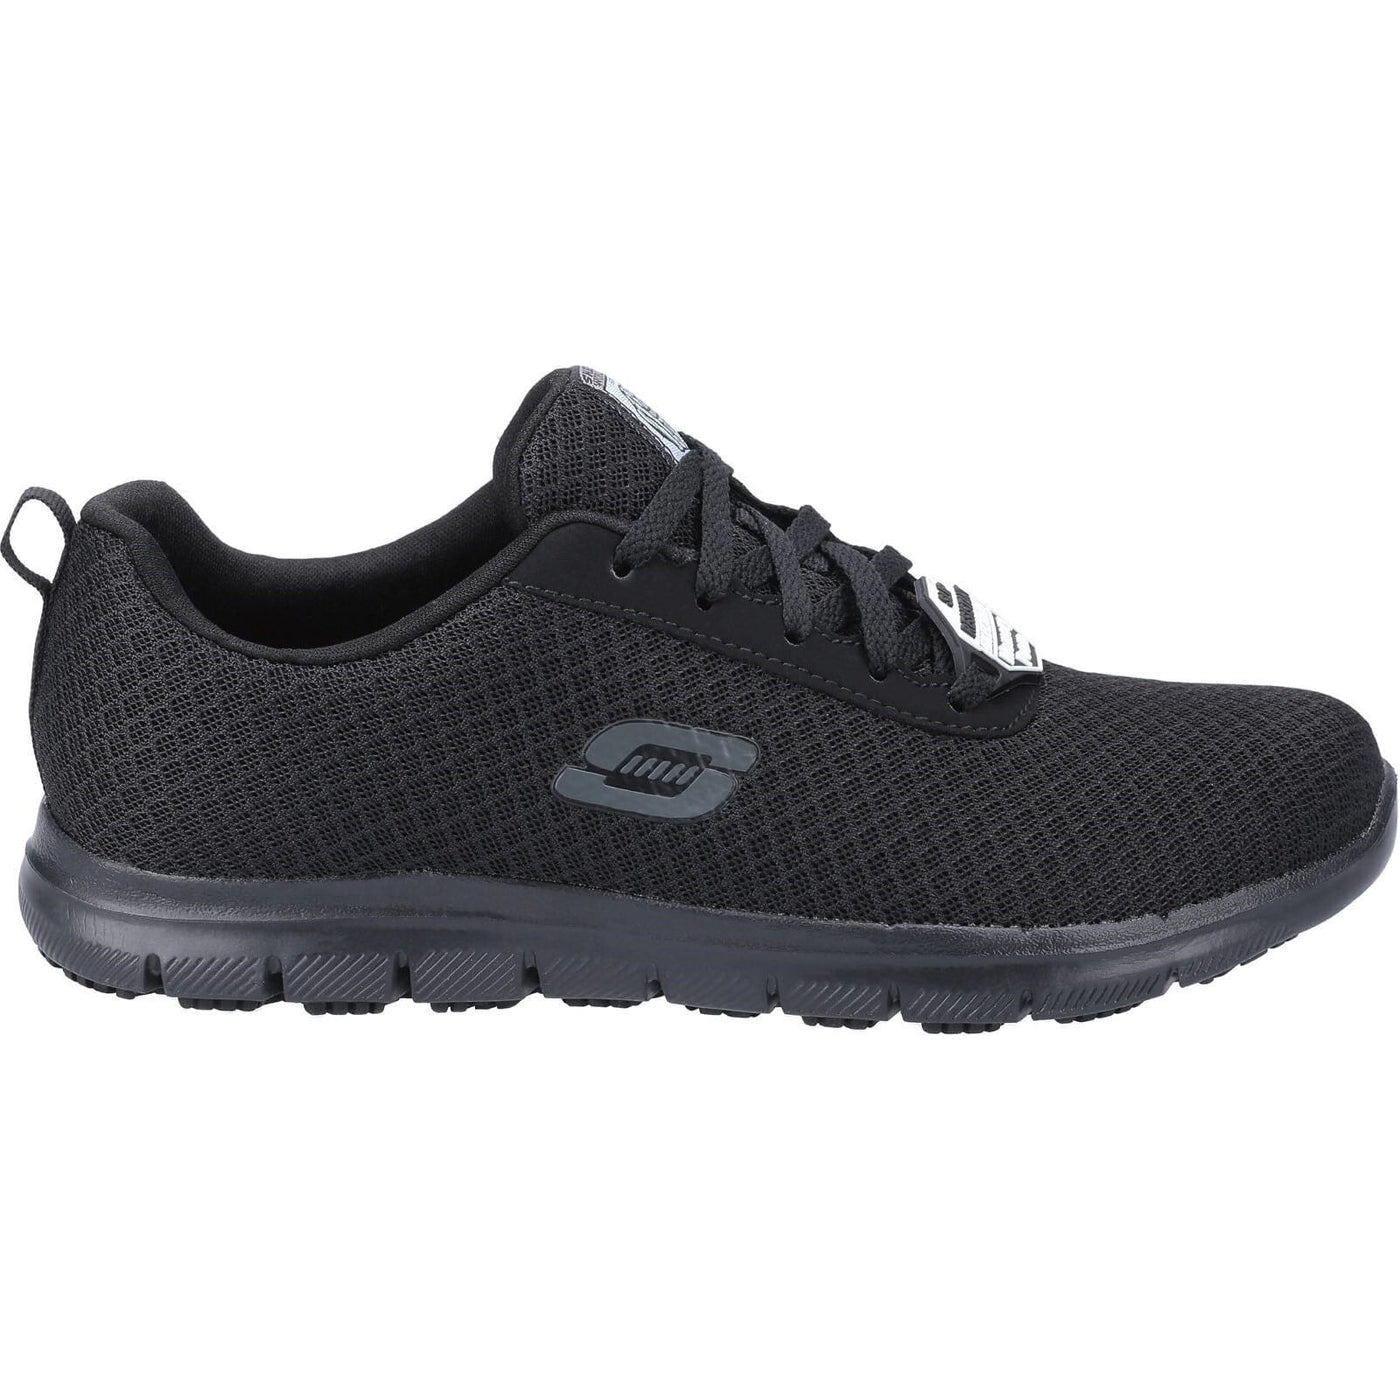 Skechers Genter Bronaugh Slip Resistant Work Shoes-Black-4